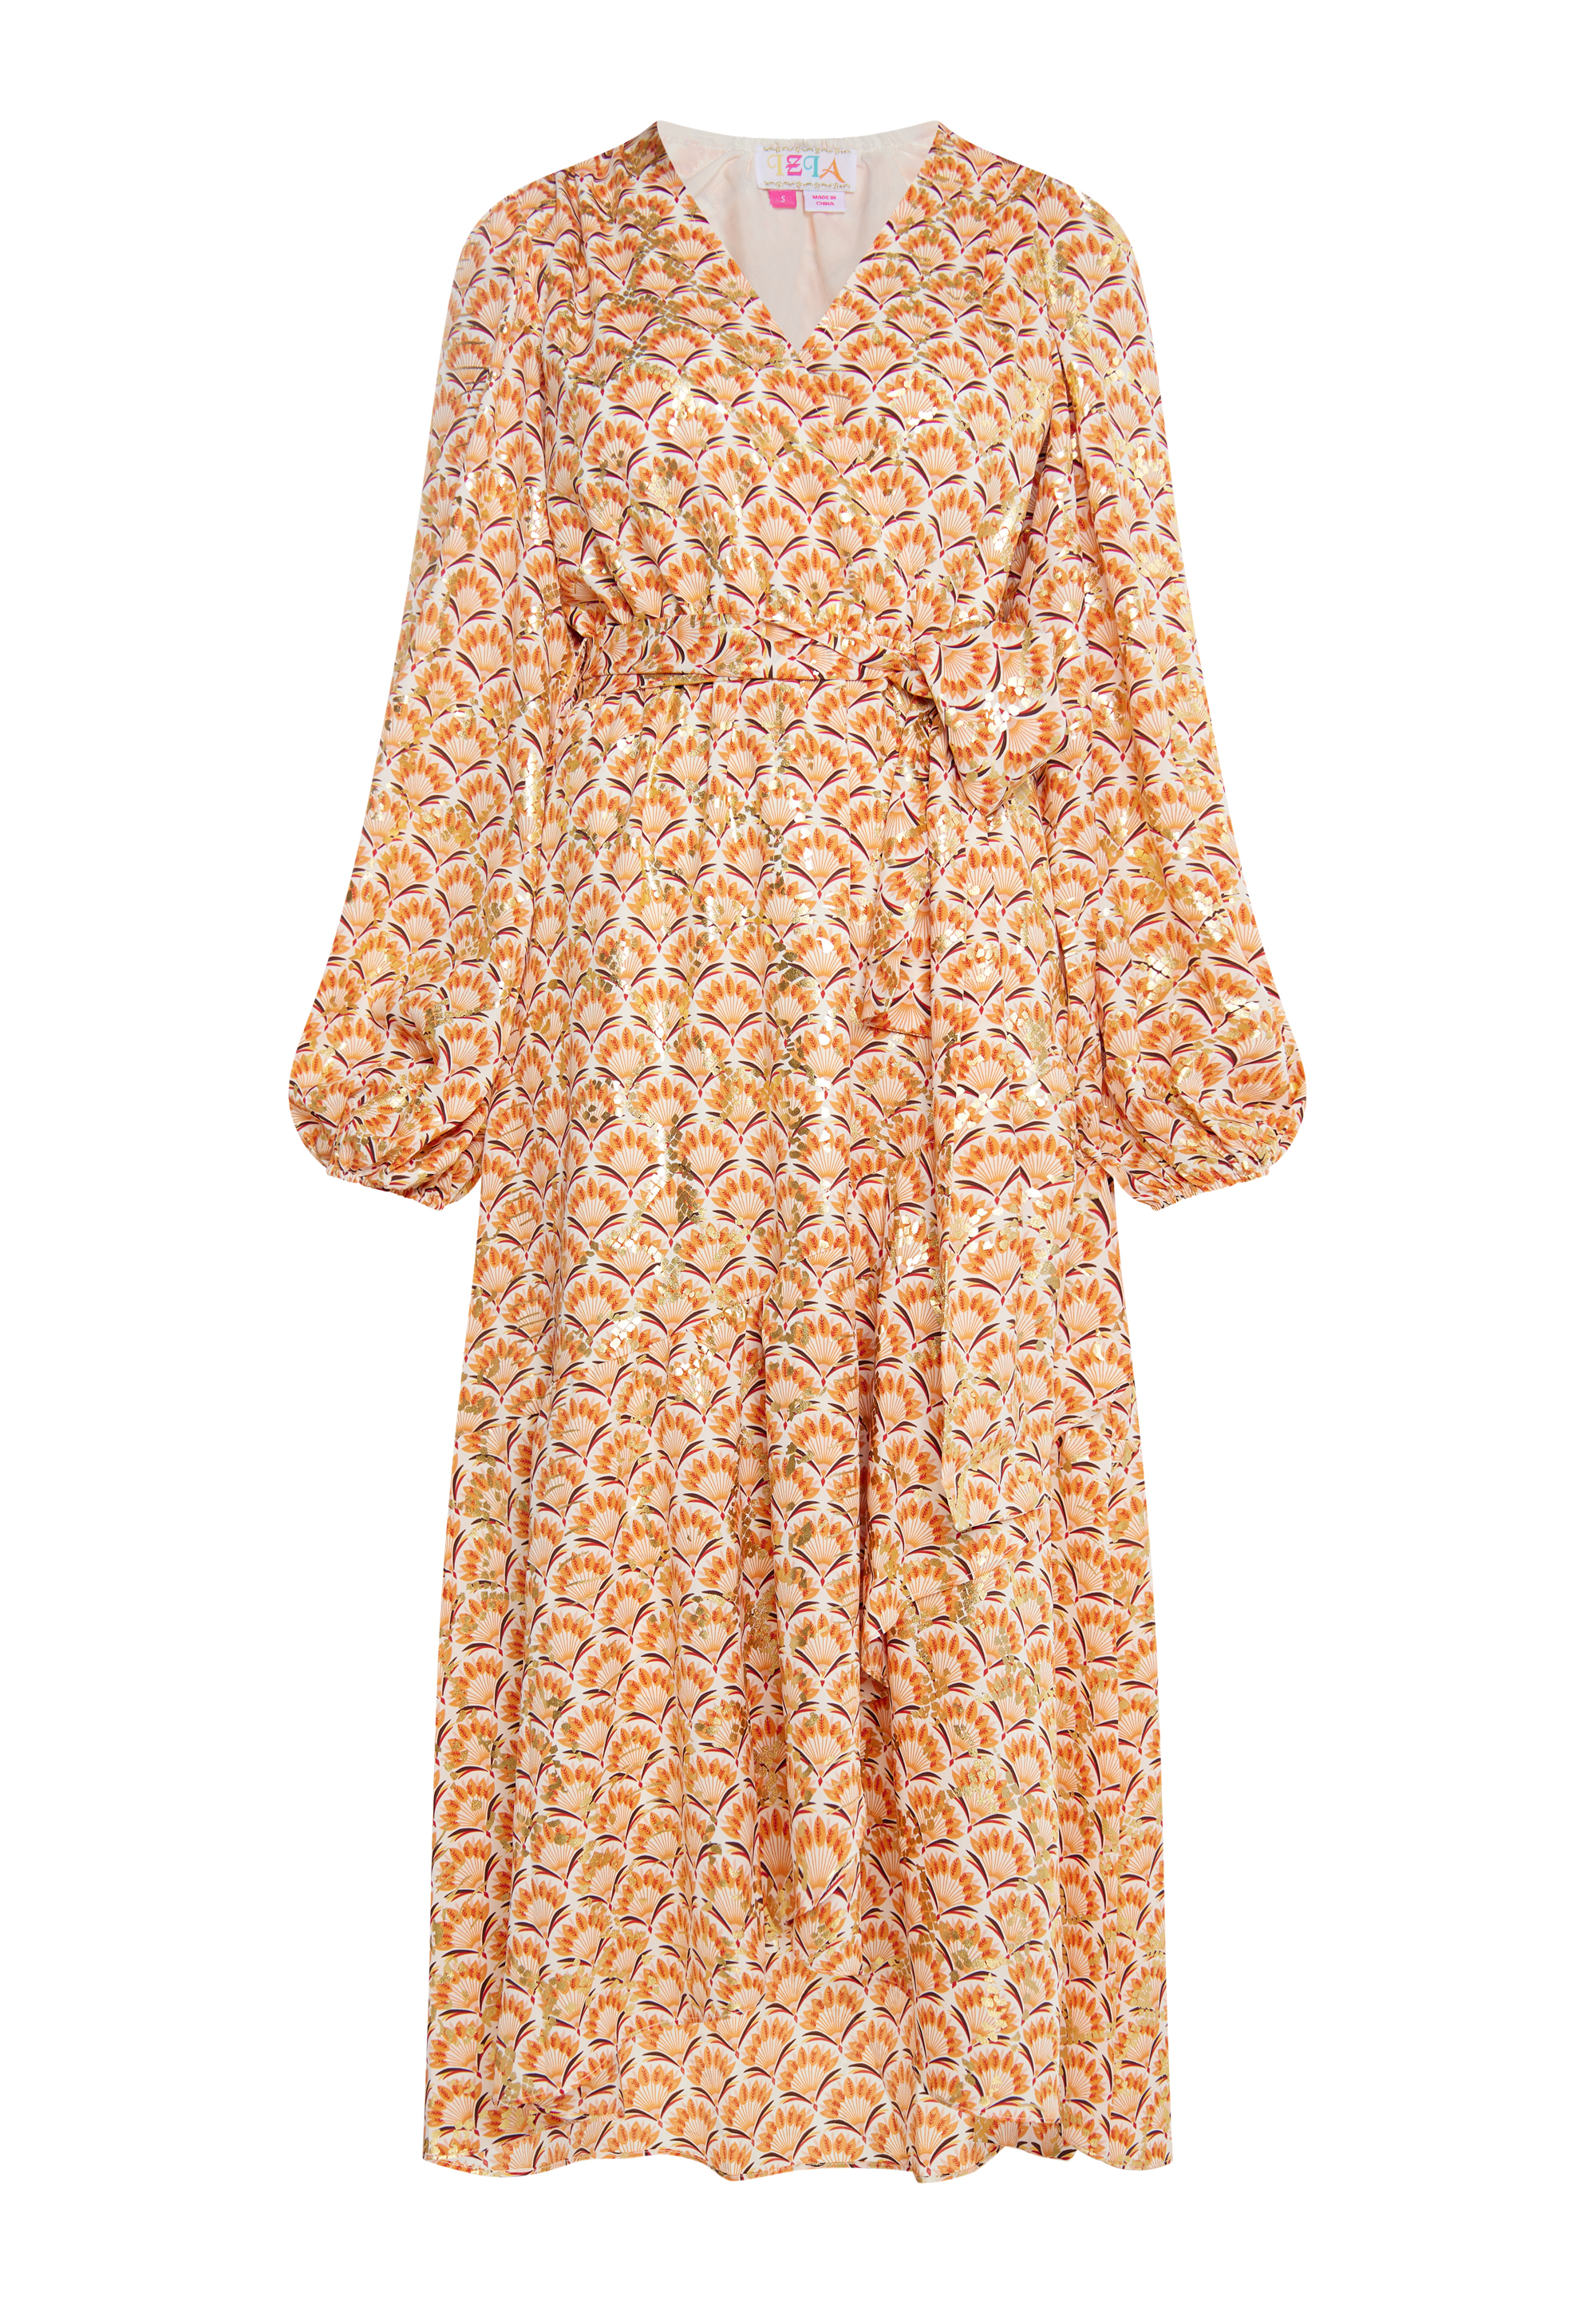 Платье IZIA Maxi Mit Print, цвет Wollweiss Mehrfarbig платье izia maxi mit print цвет kamel mehrfarbig